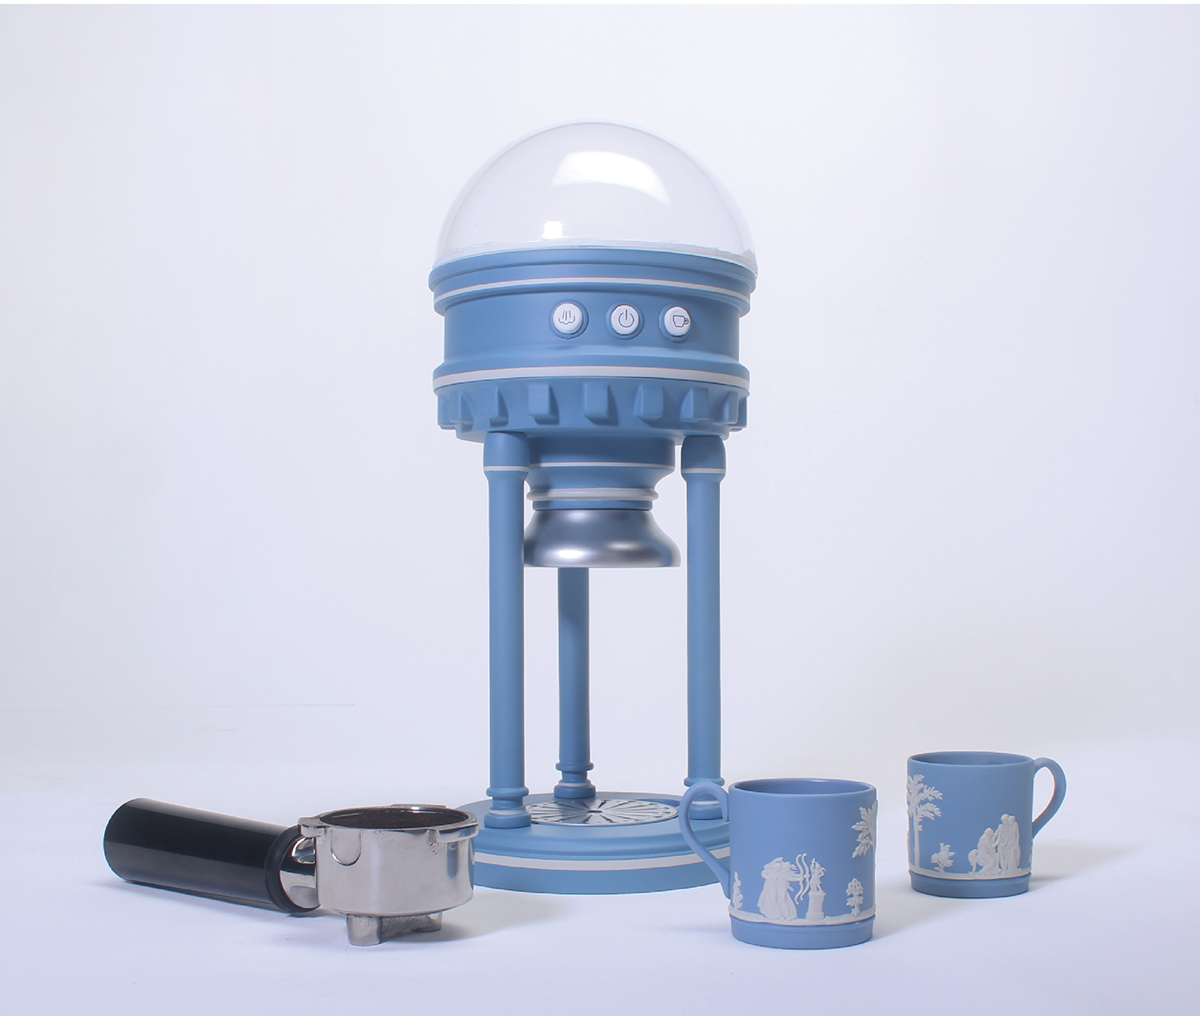 工業設計 產品設計 wedgwood brandredesign productdesign coffeemachine industrialdesign craft concept brand